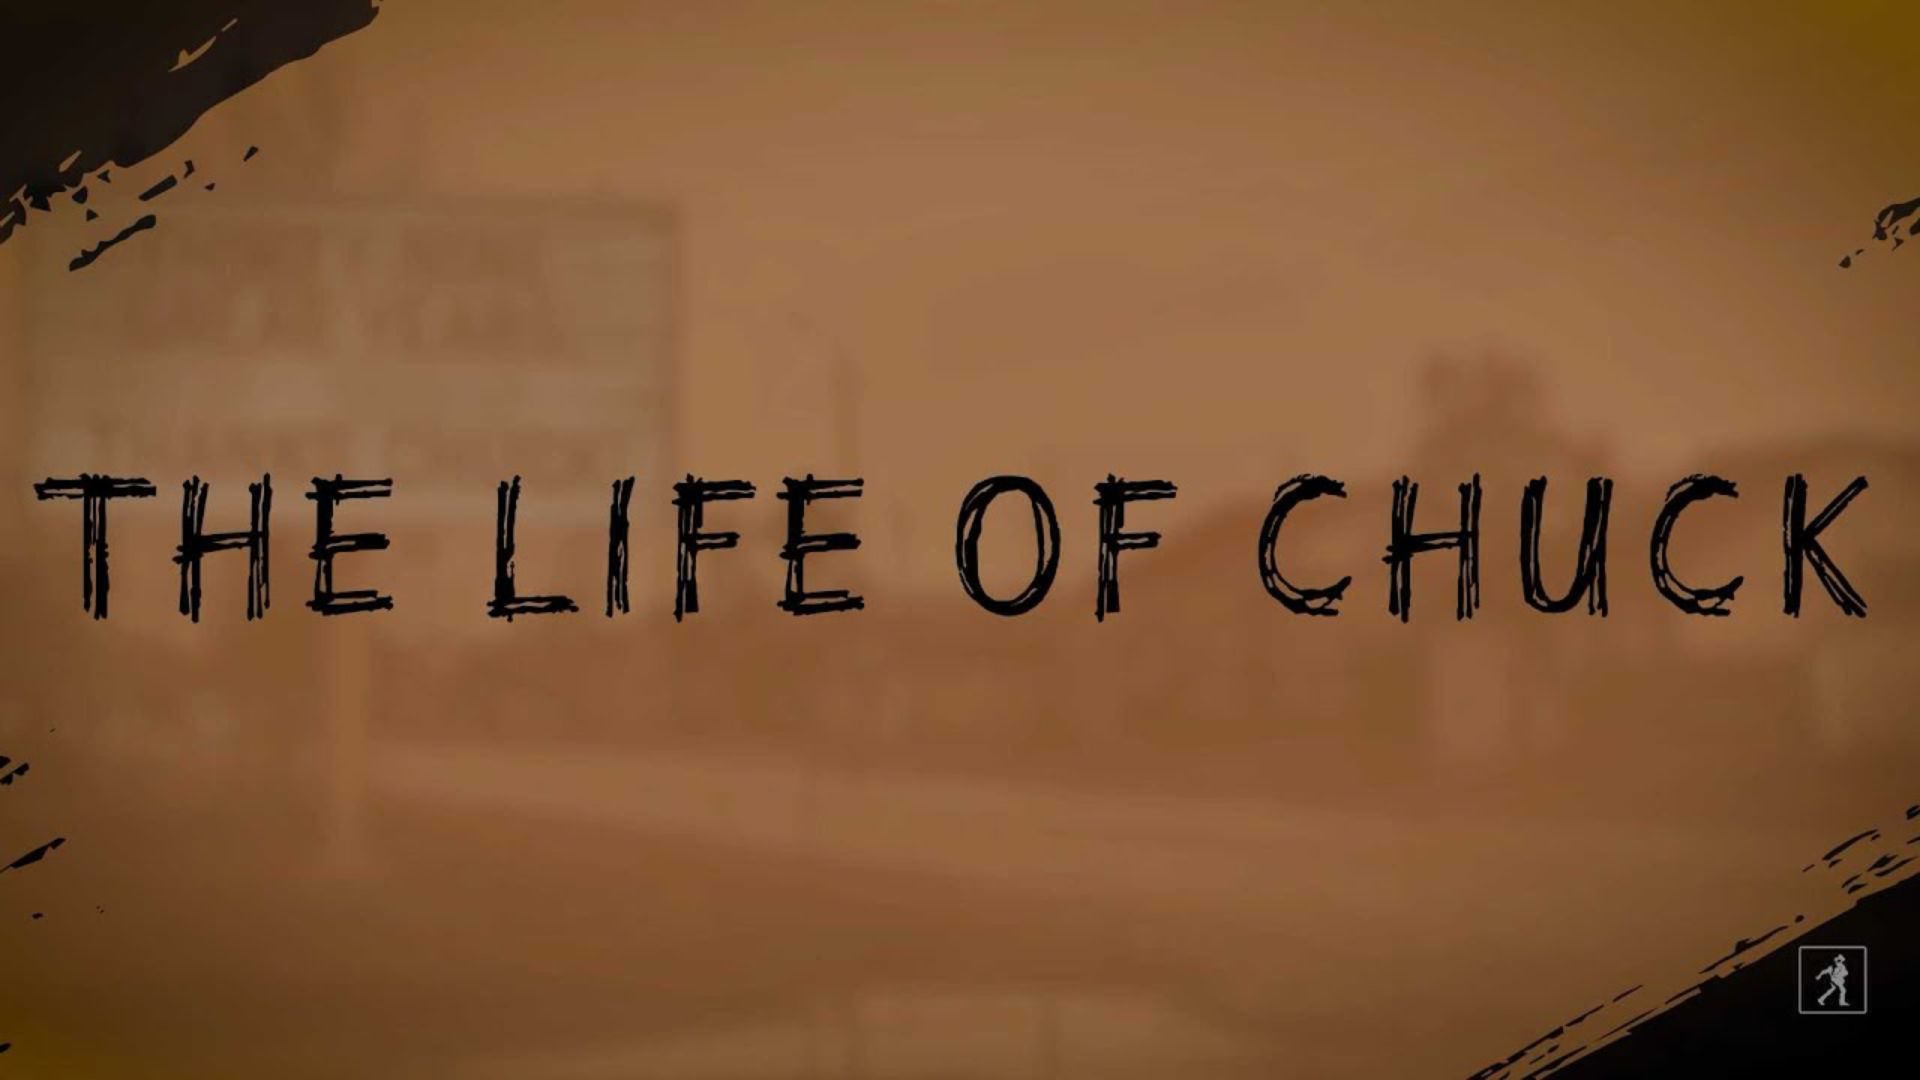 Life of chuck